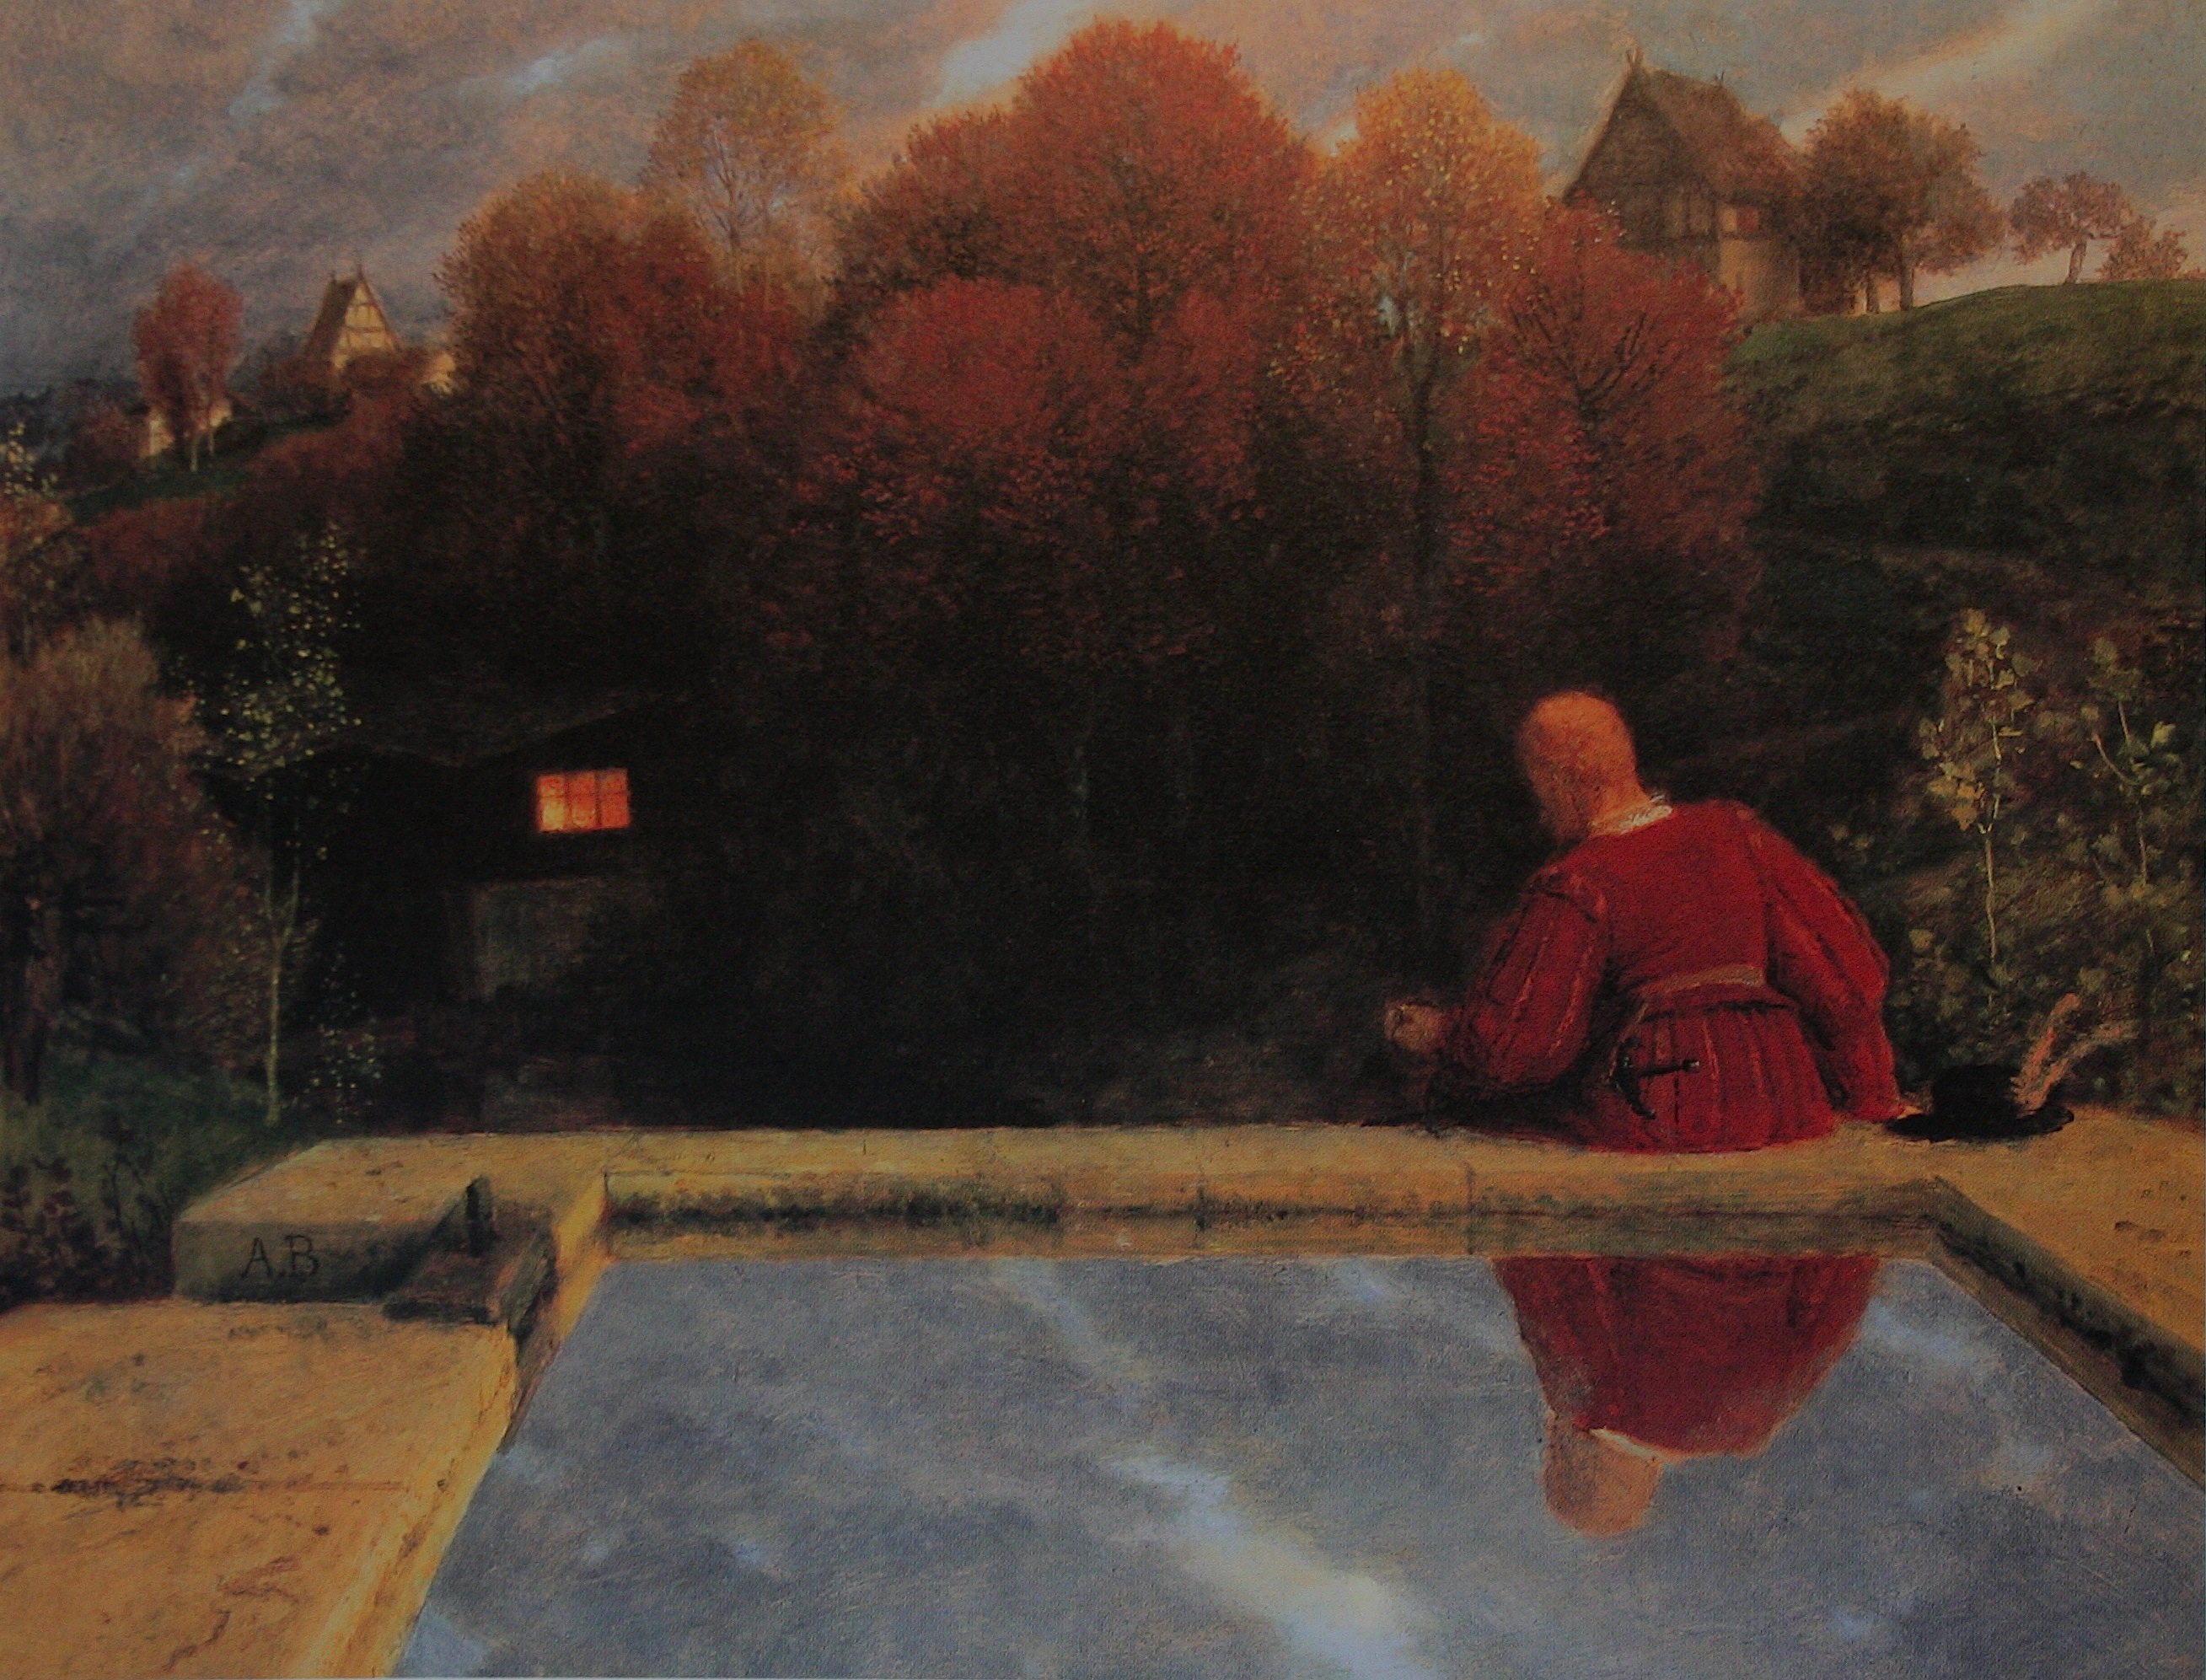 Powrót do domu by Arnold Böcklin - 1887 - 78.5 x 100 cm 